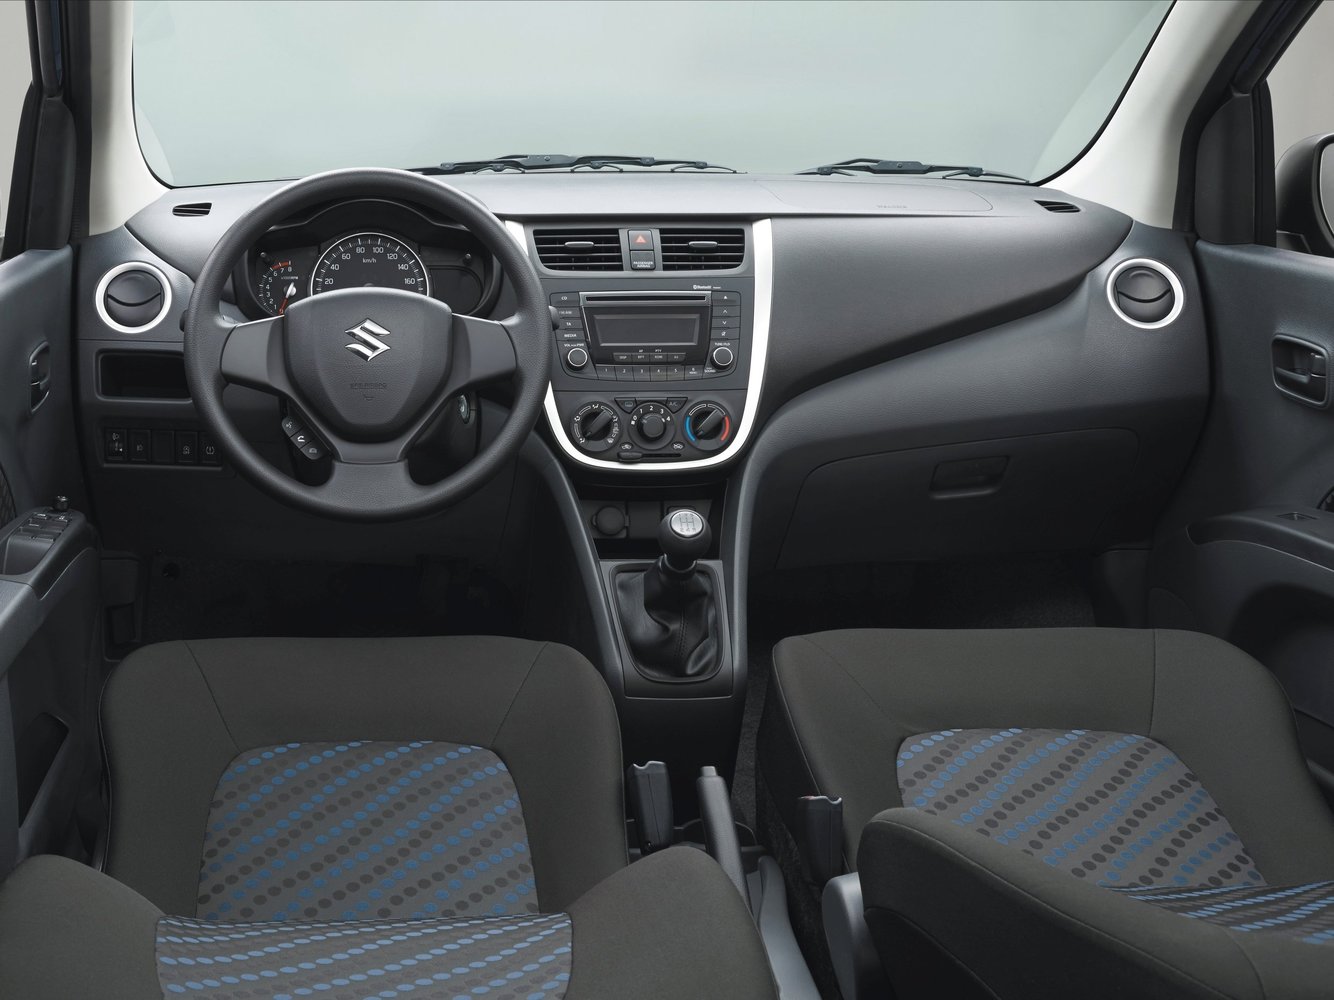 хэтчбек 5 дв. Suzuki Celerio 2014 - 2016г выпуска модификация 1.0 AMT (68 л.с.)